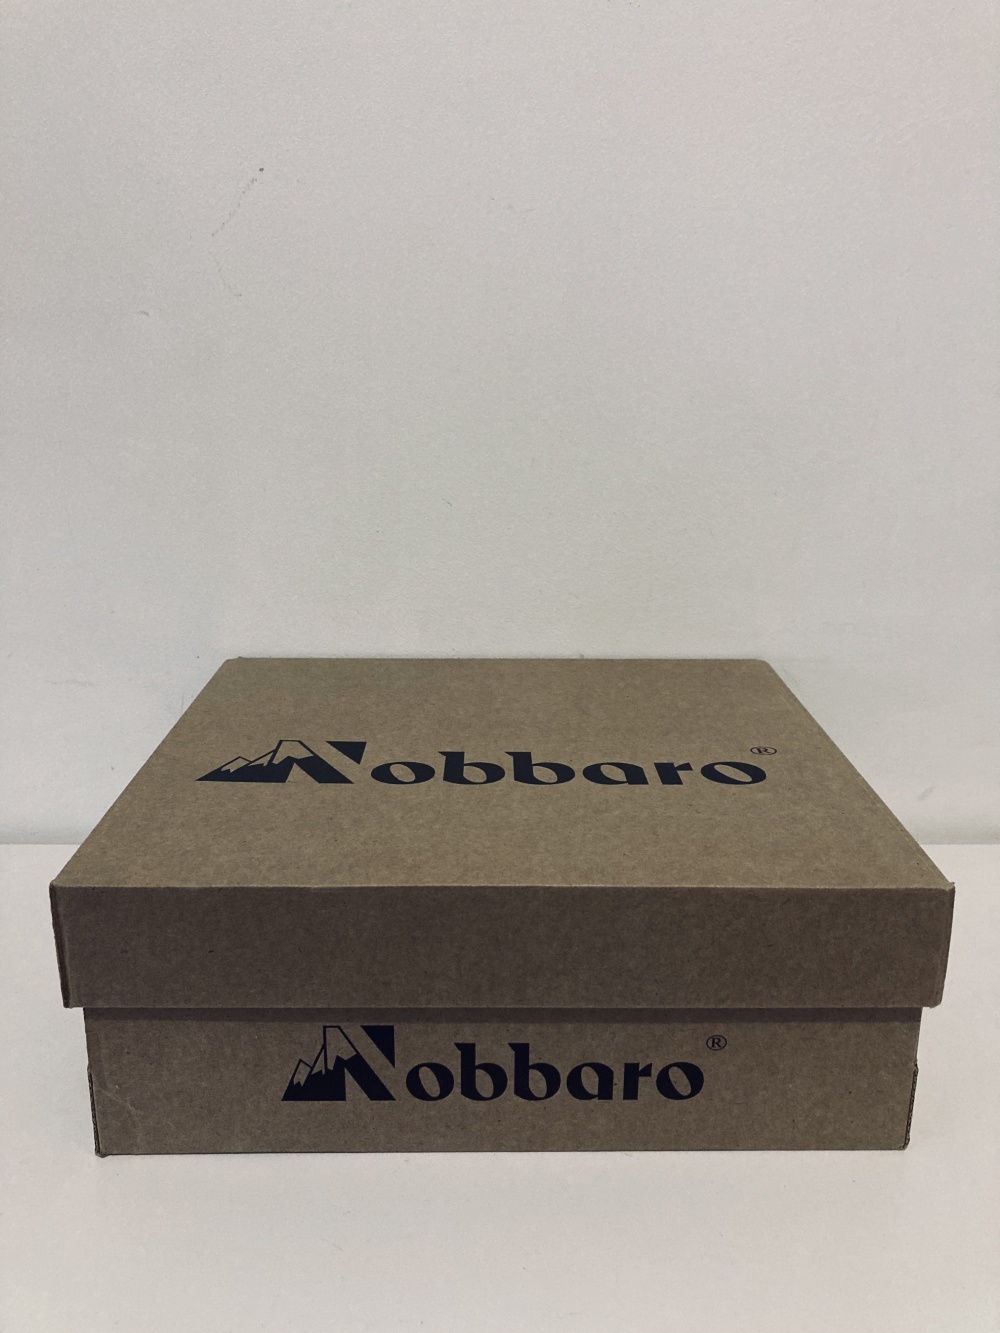 Сапожки “ Nobbaro ”, 40 размер